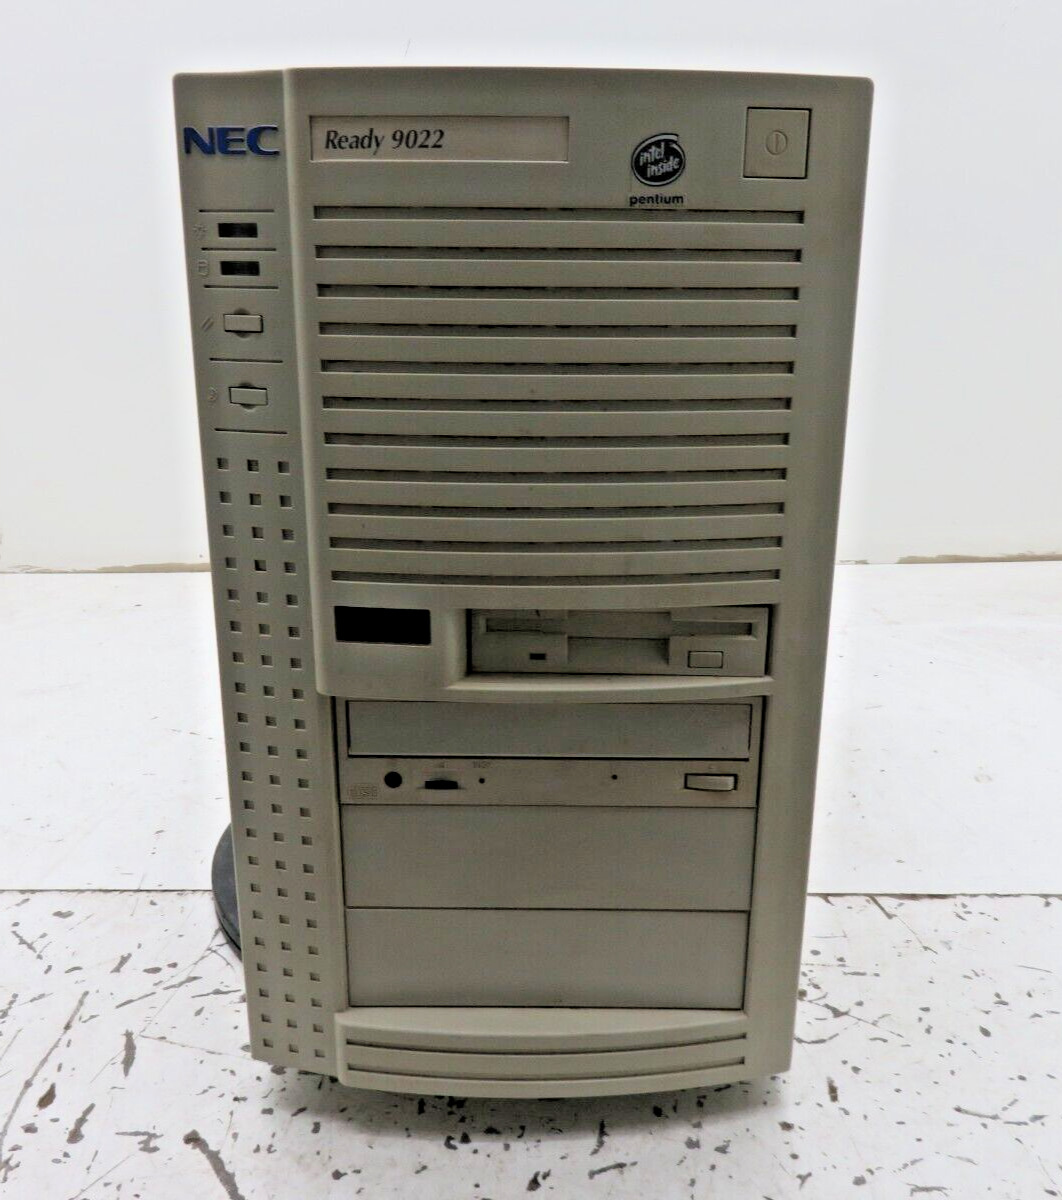 NEC Ready 9022 Desktop Computer Intel Pentium 100MHz 24MB Ram No HDD